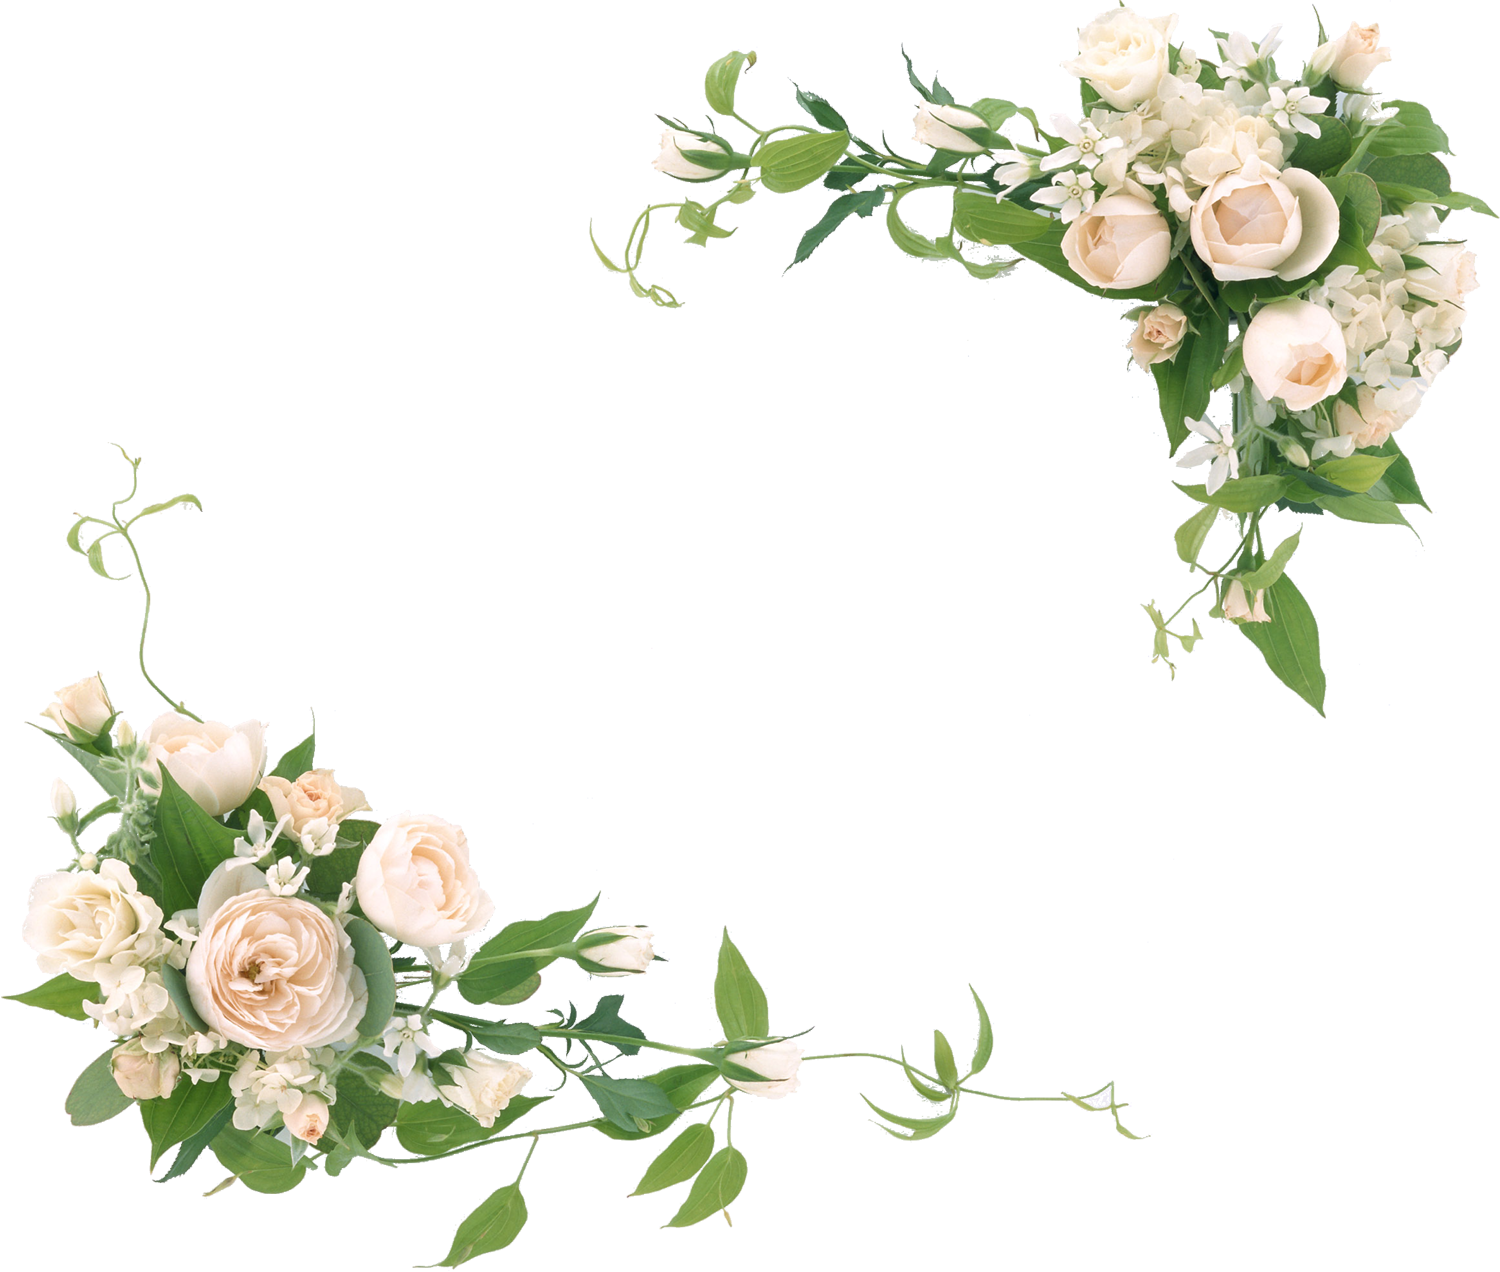 花や葉の写真 画像 フリー素材 フレーム枠no 1111 白バラ 緑葉